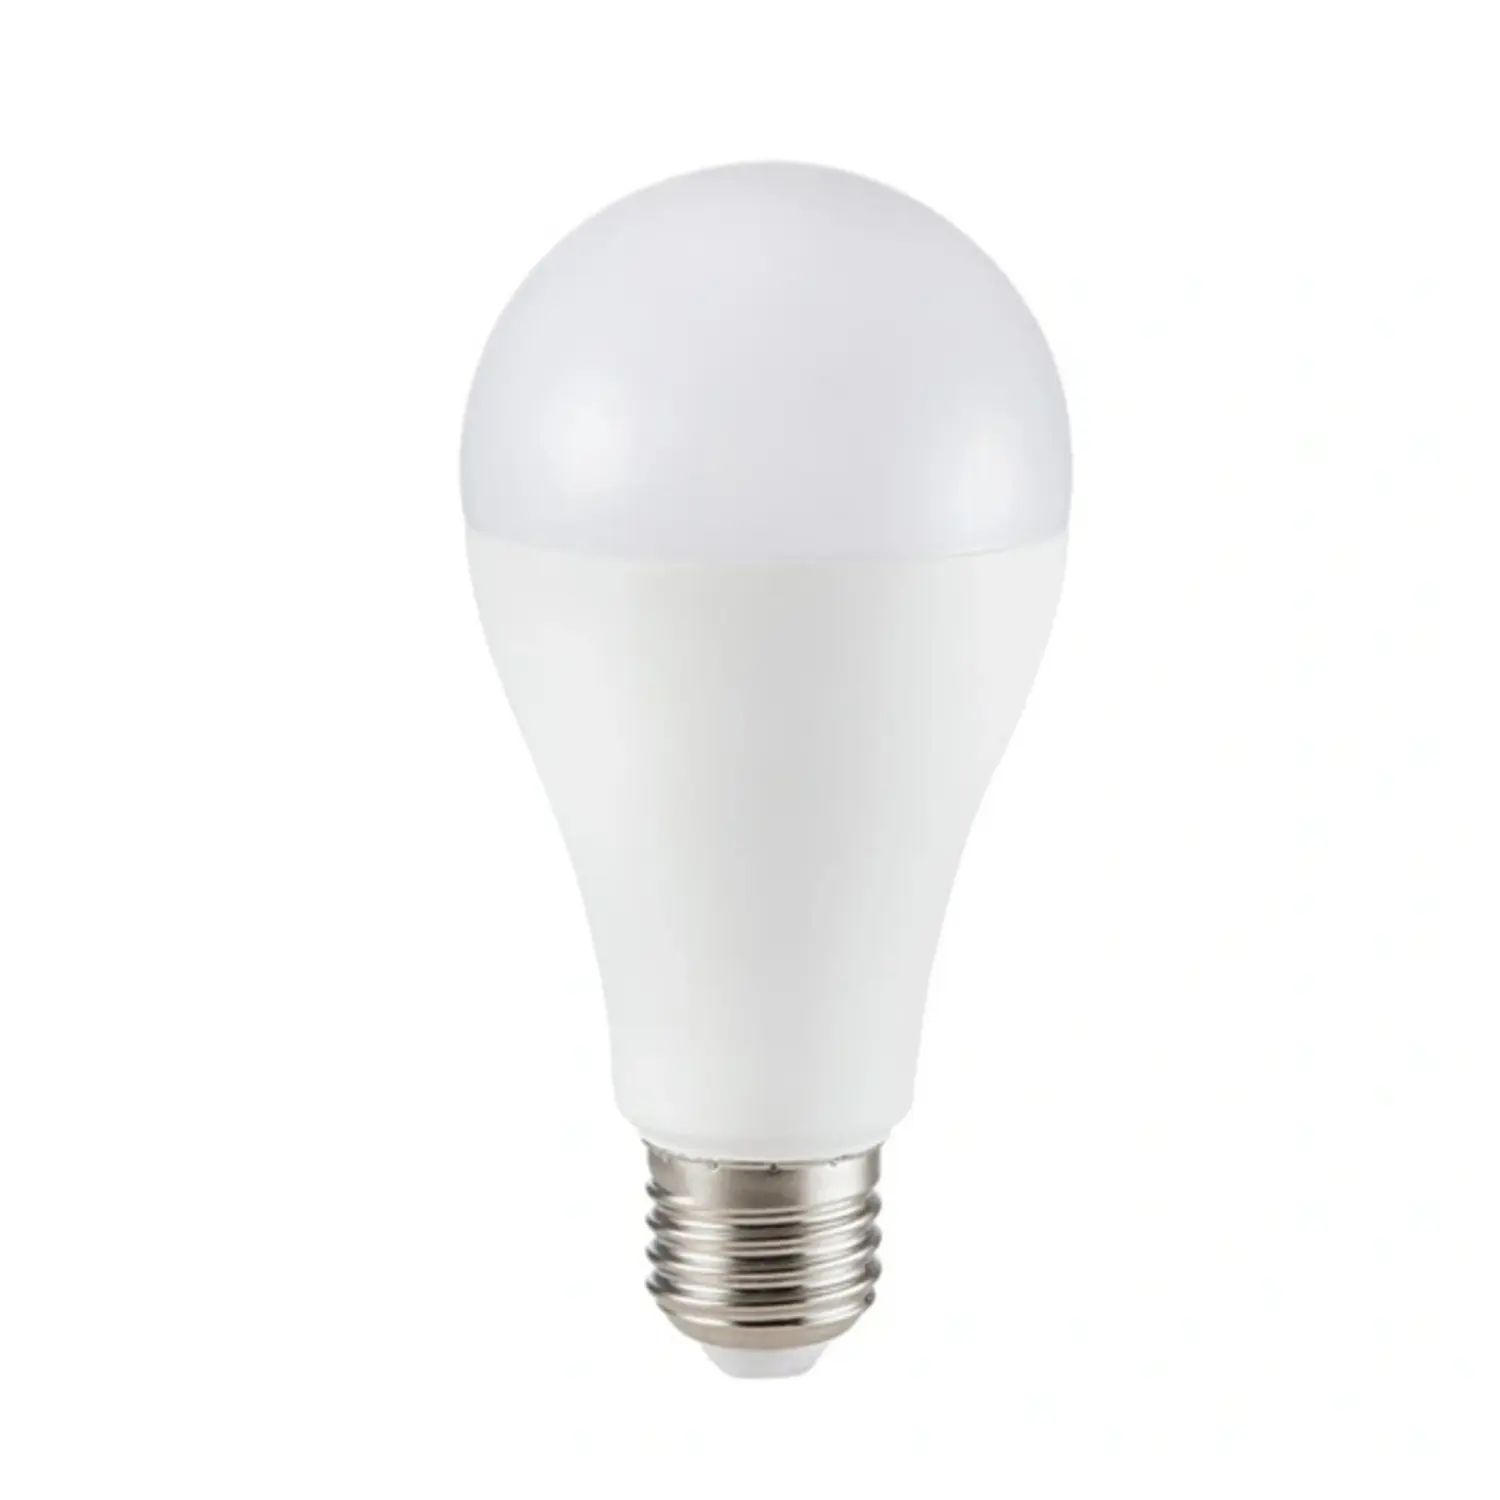 immagine del prodotto lampadina led bulbo classico chip samsung A65 e27 15 watt bianco freddo